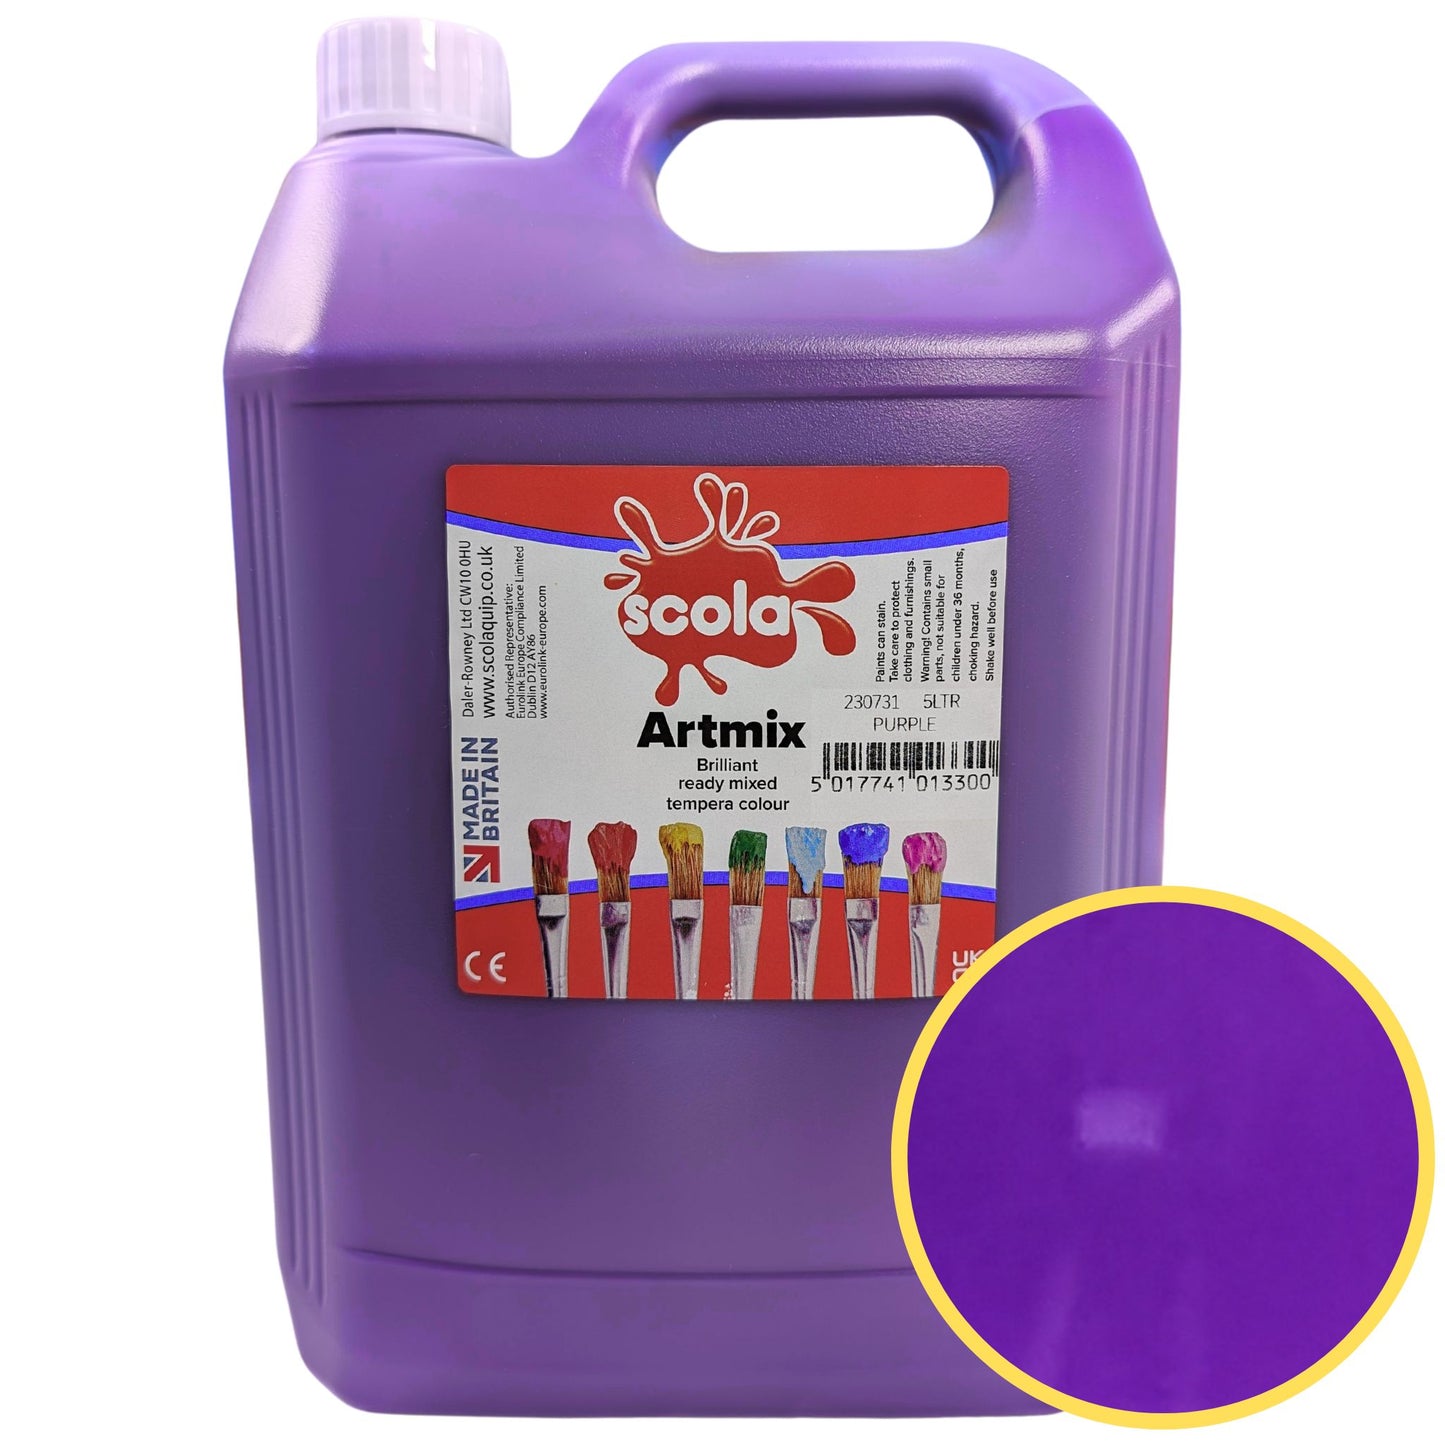 Scola Artmix Ready Mix Paint 5 litre